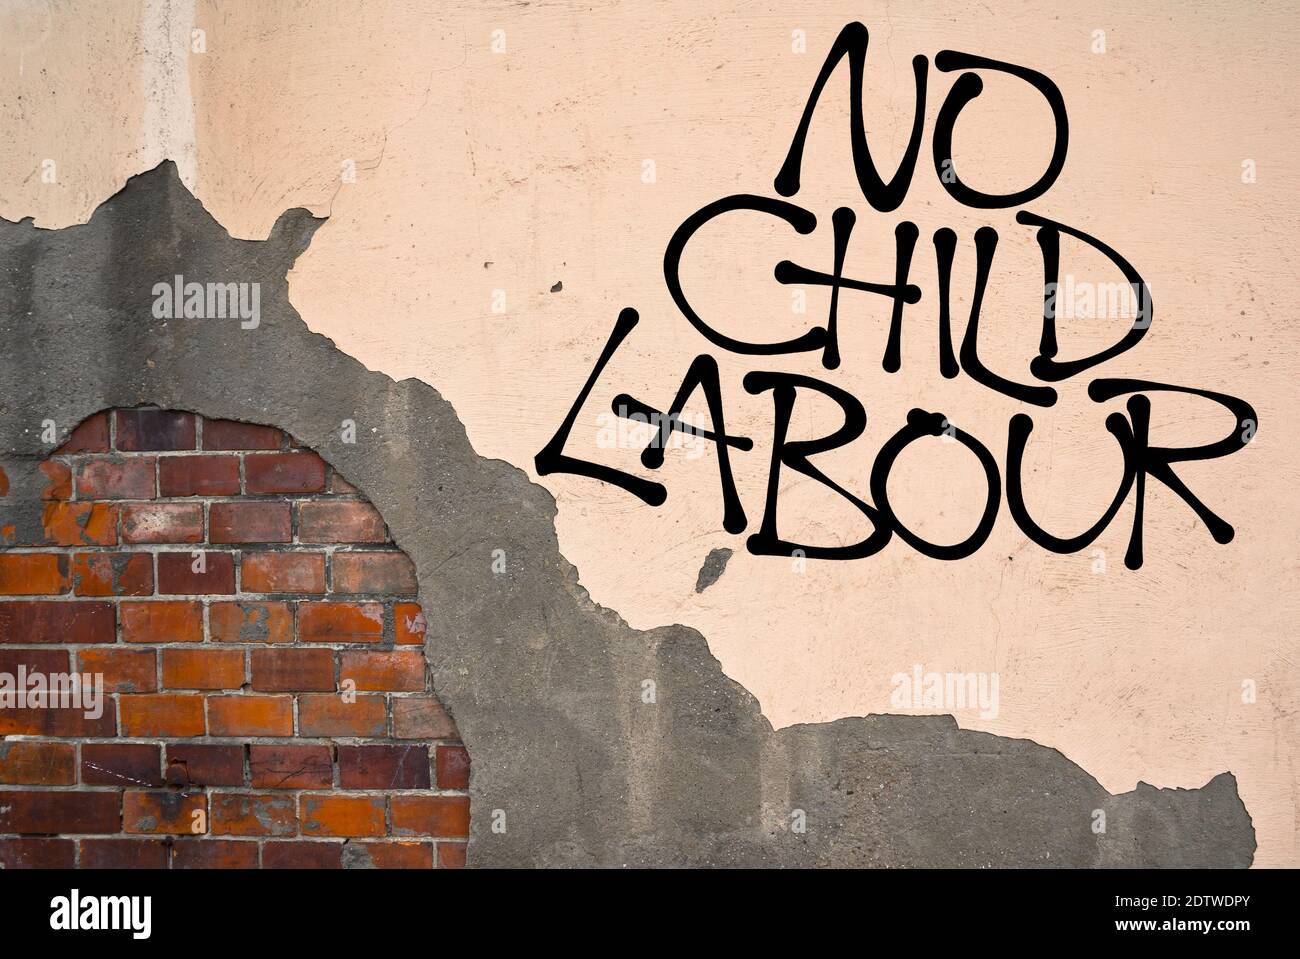 No Child Labor - handgeschriebene Graffiti an die Wand gesprüht, anarchistische Ästhetik. Aufruf zur Bekämpfung der Ausbeutung der Kinderarbeit Stockfoto